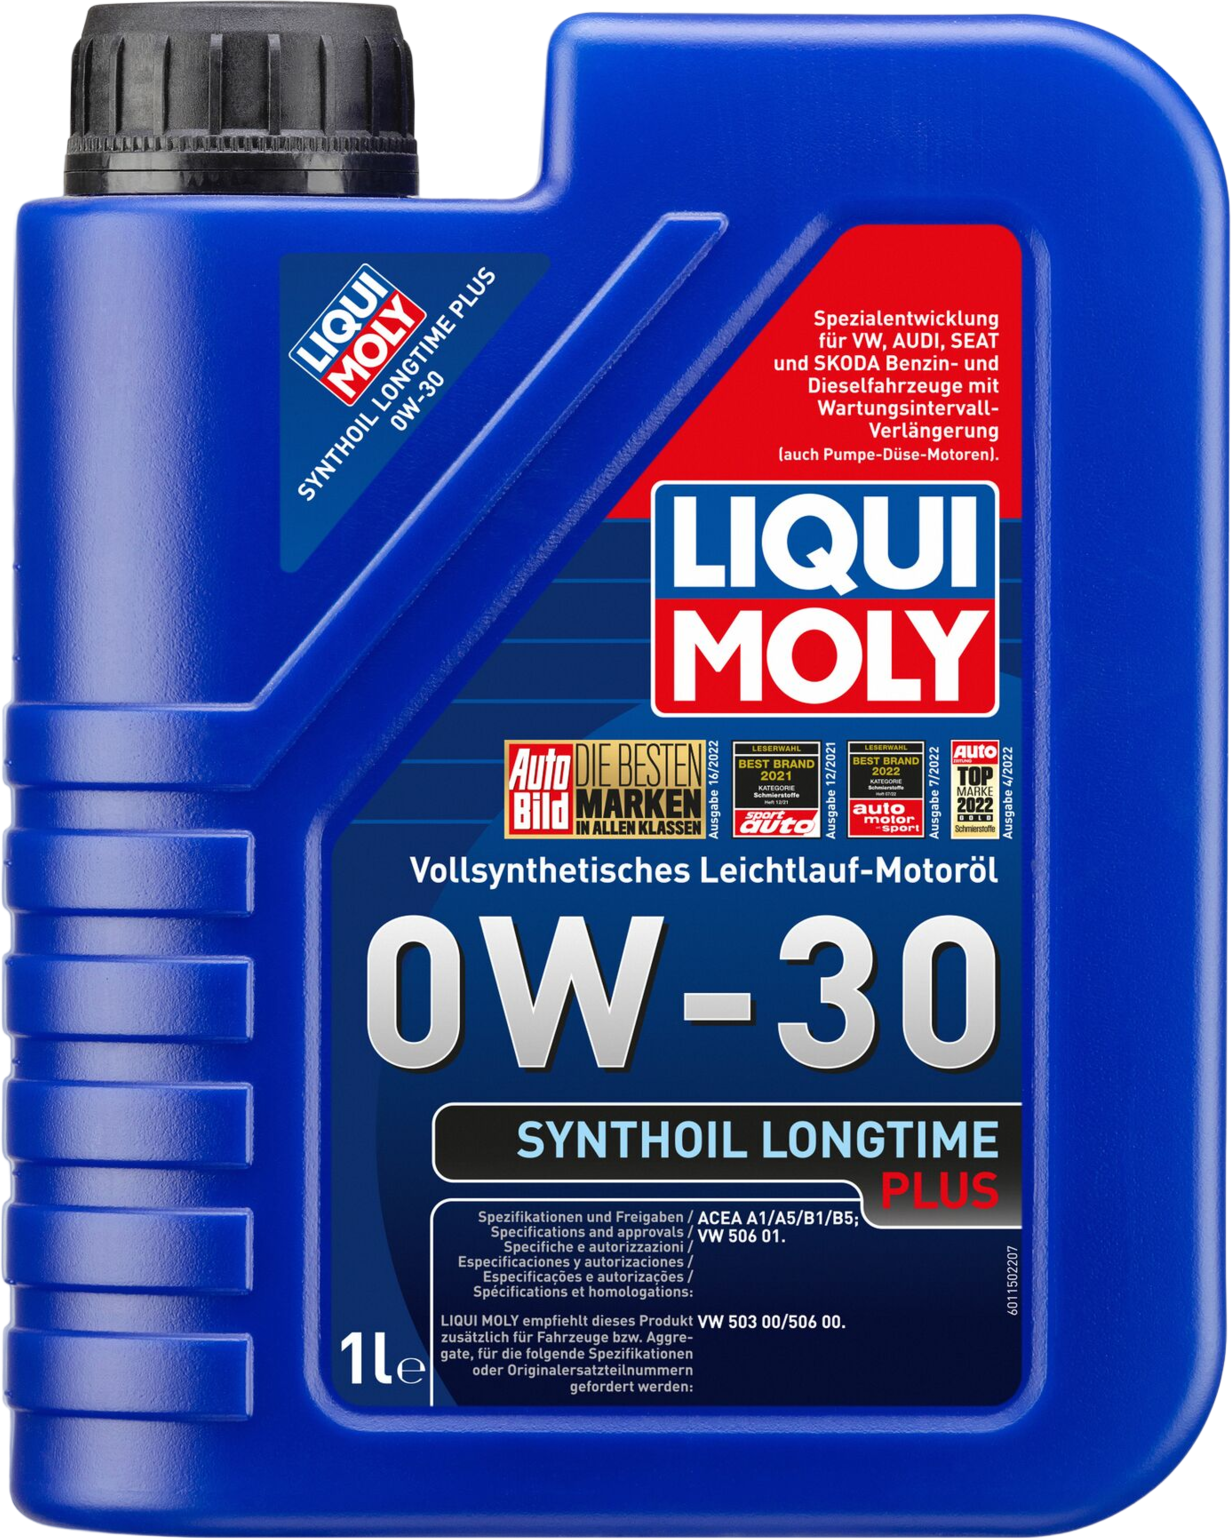 Liqui Moly Synthoil Longtime Plus 0W-30, 1 lt